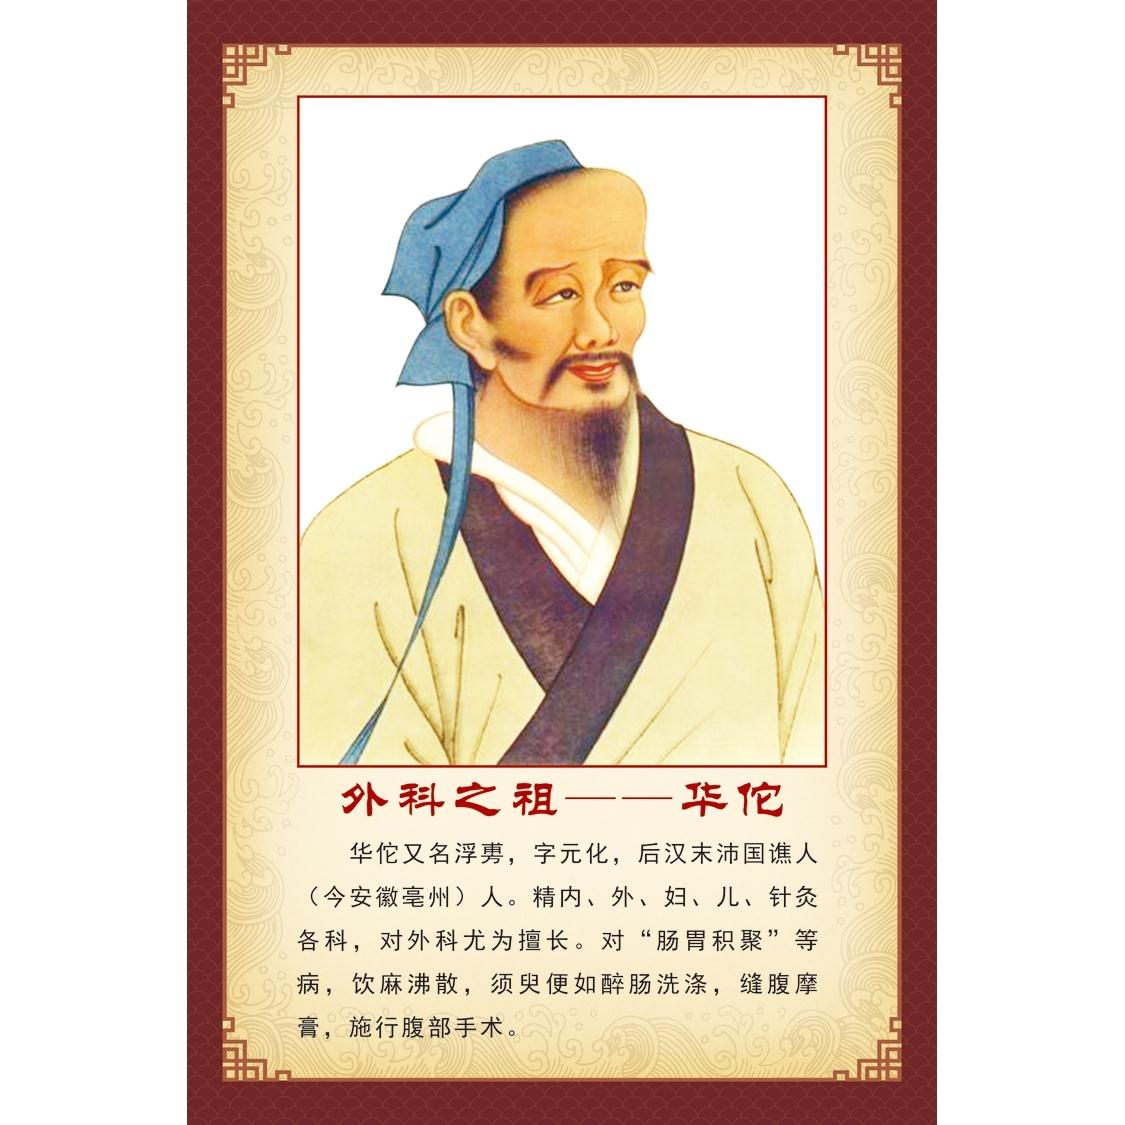 中国古代十大名医华佗图名人名医画像中医文化宣传医院宣传海报图